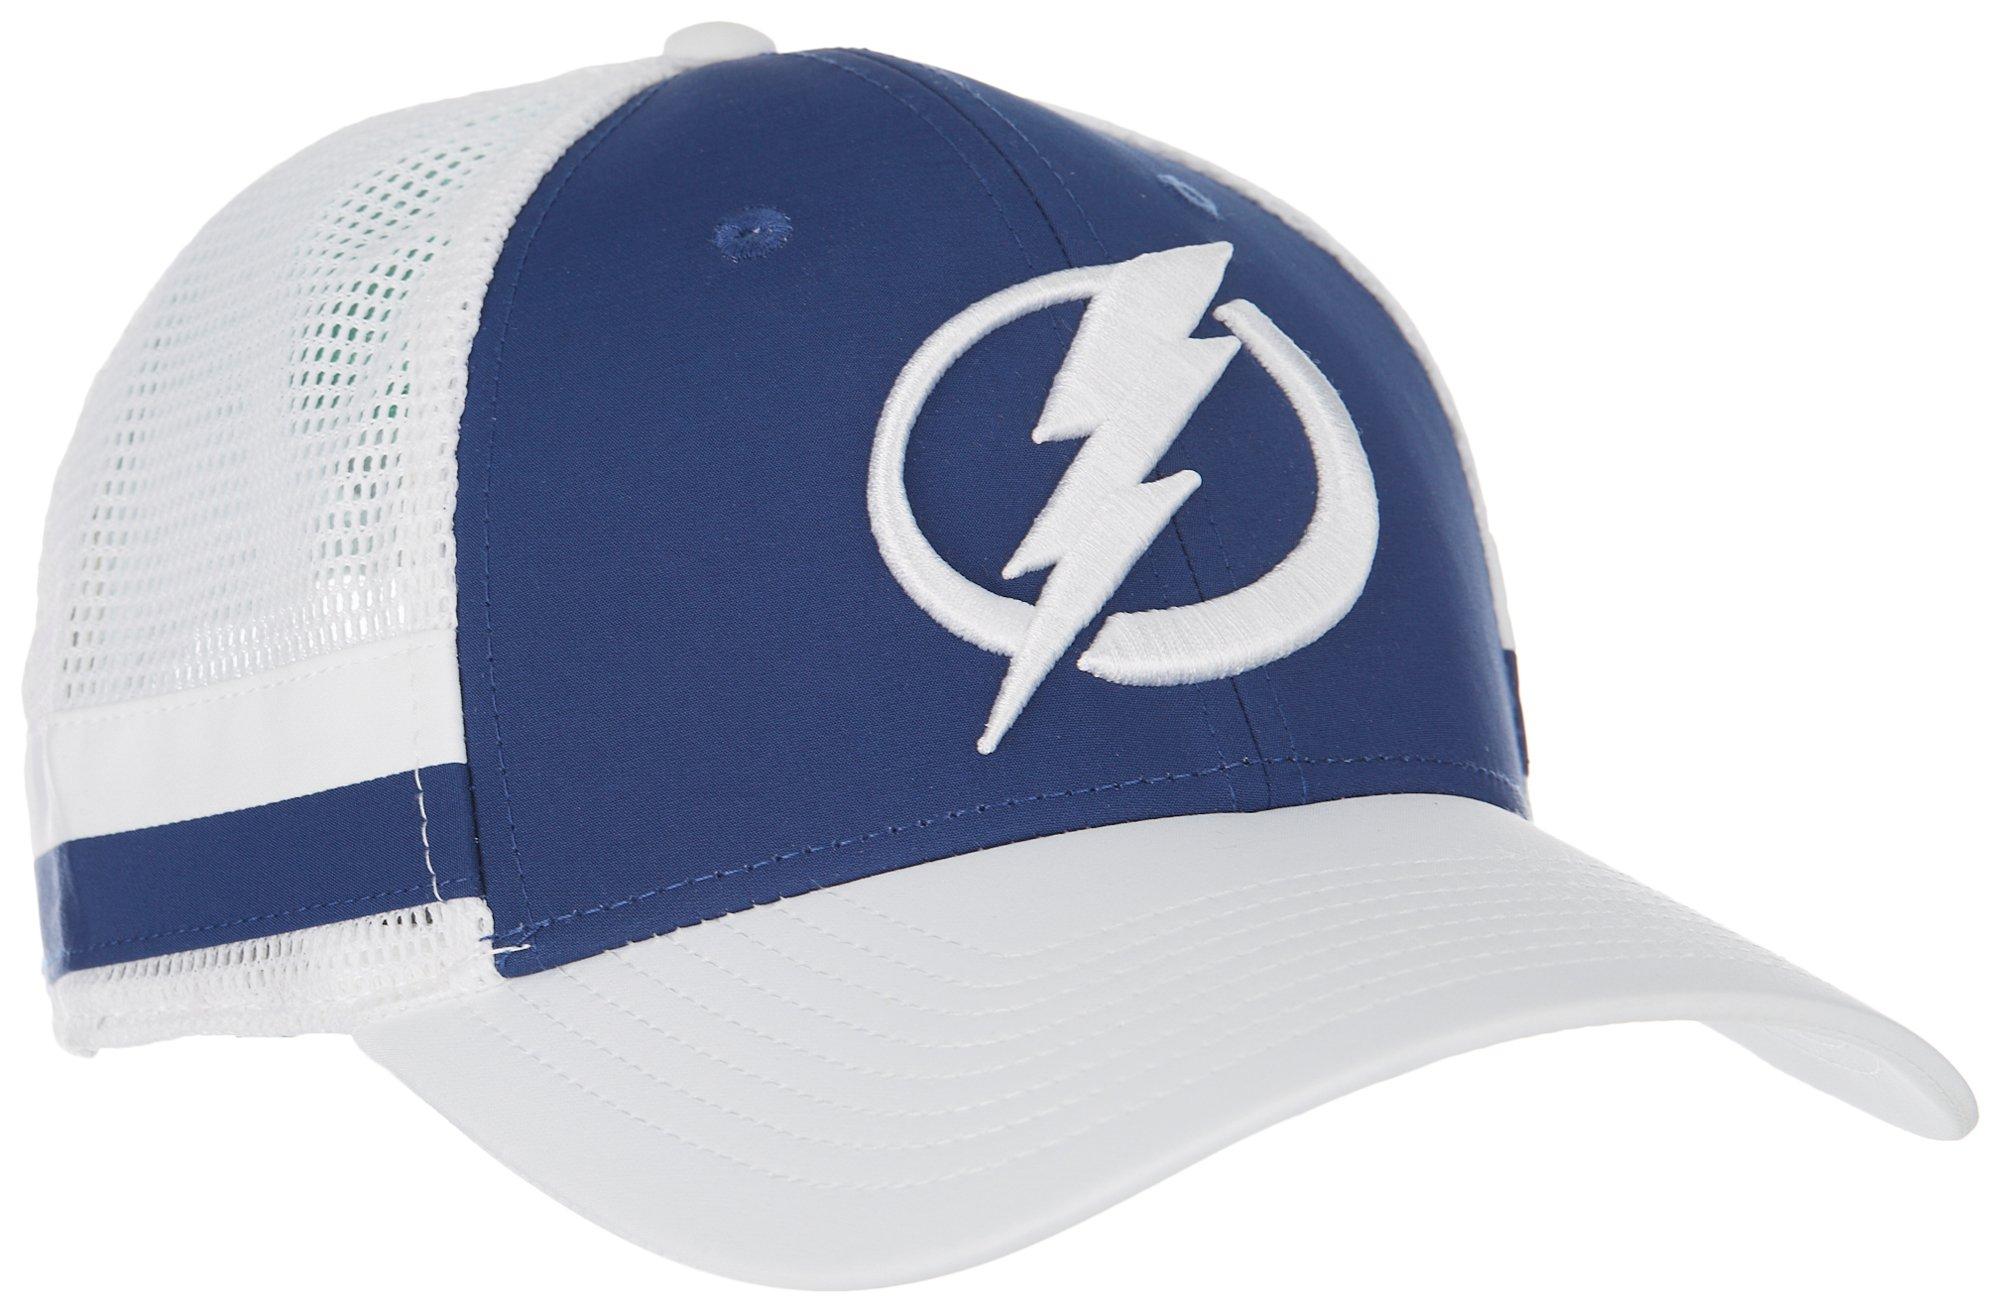 Men's Tampa Bay Lightning Gear & Hockey Gifts, Men's Lightning Apparel, Guys'  Clothes